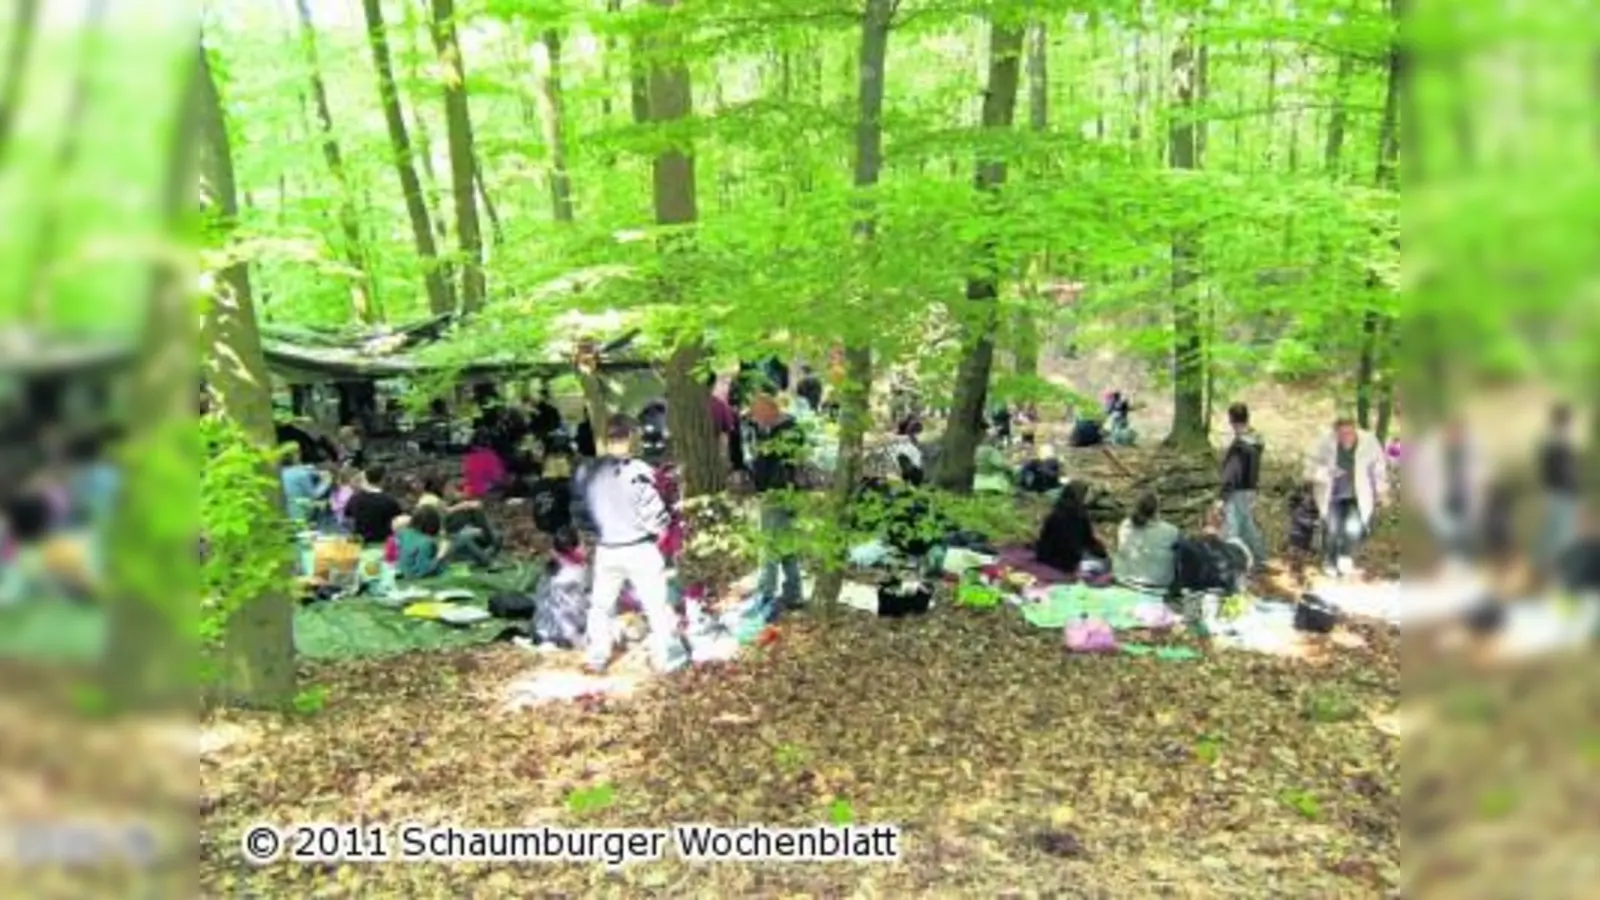 Picknick im Wald genießen (Foto: hb)